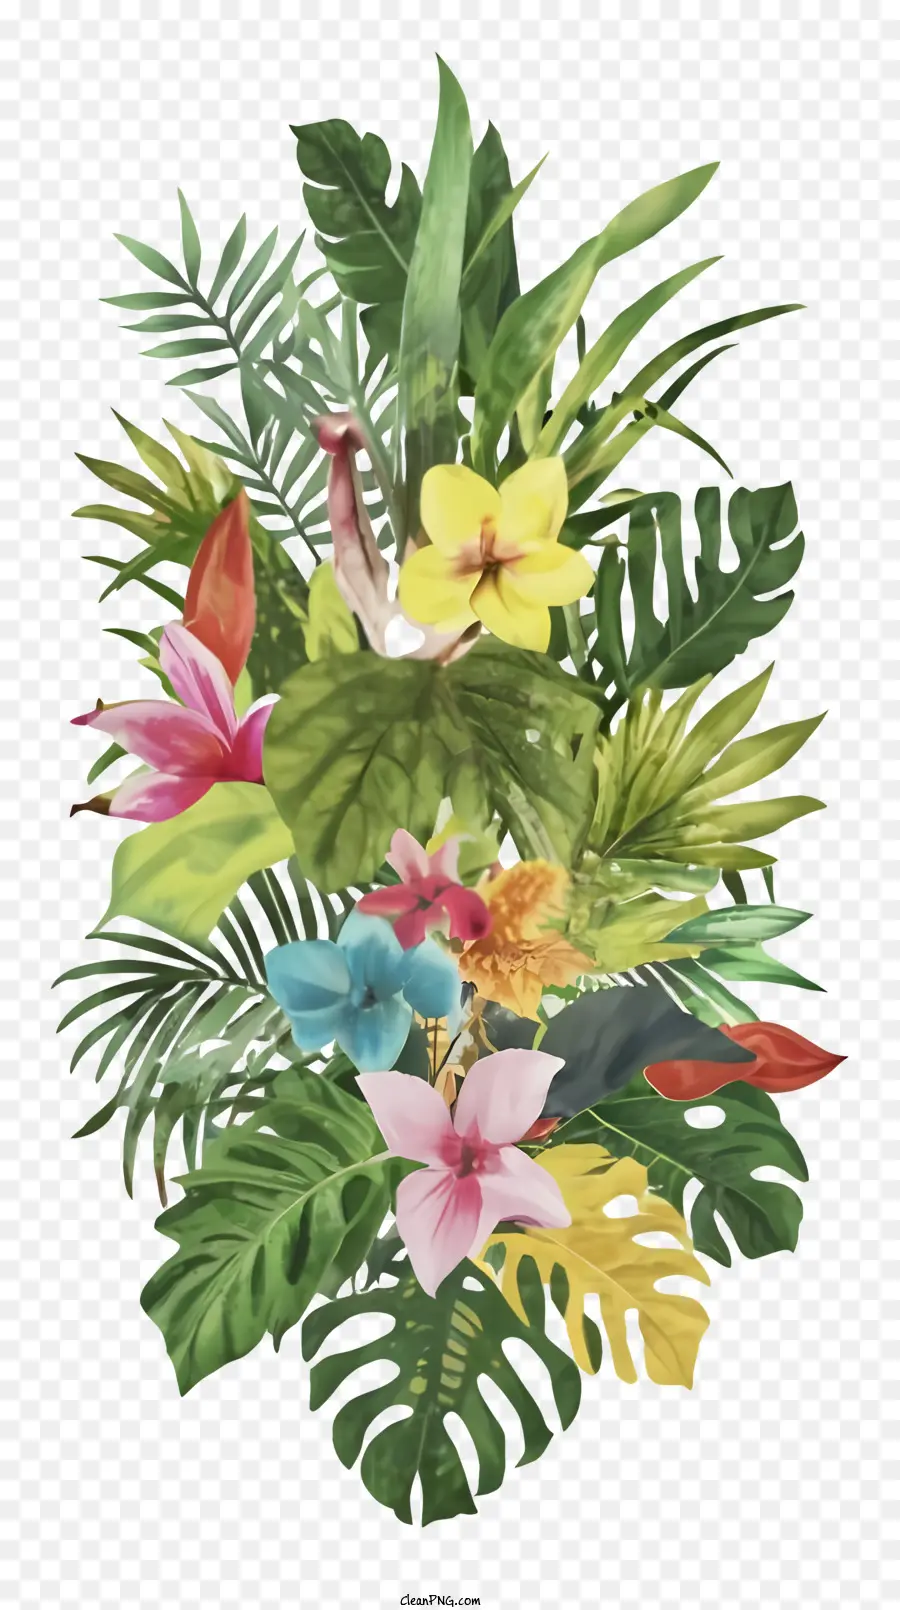 Fiori tropicali Heliconia Bird of Paradise Flowers Disposition Vase o Basket - Grande disposizione di fiori tropicali su sfondo nero